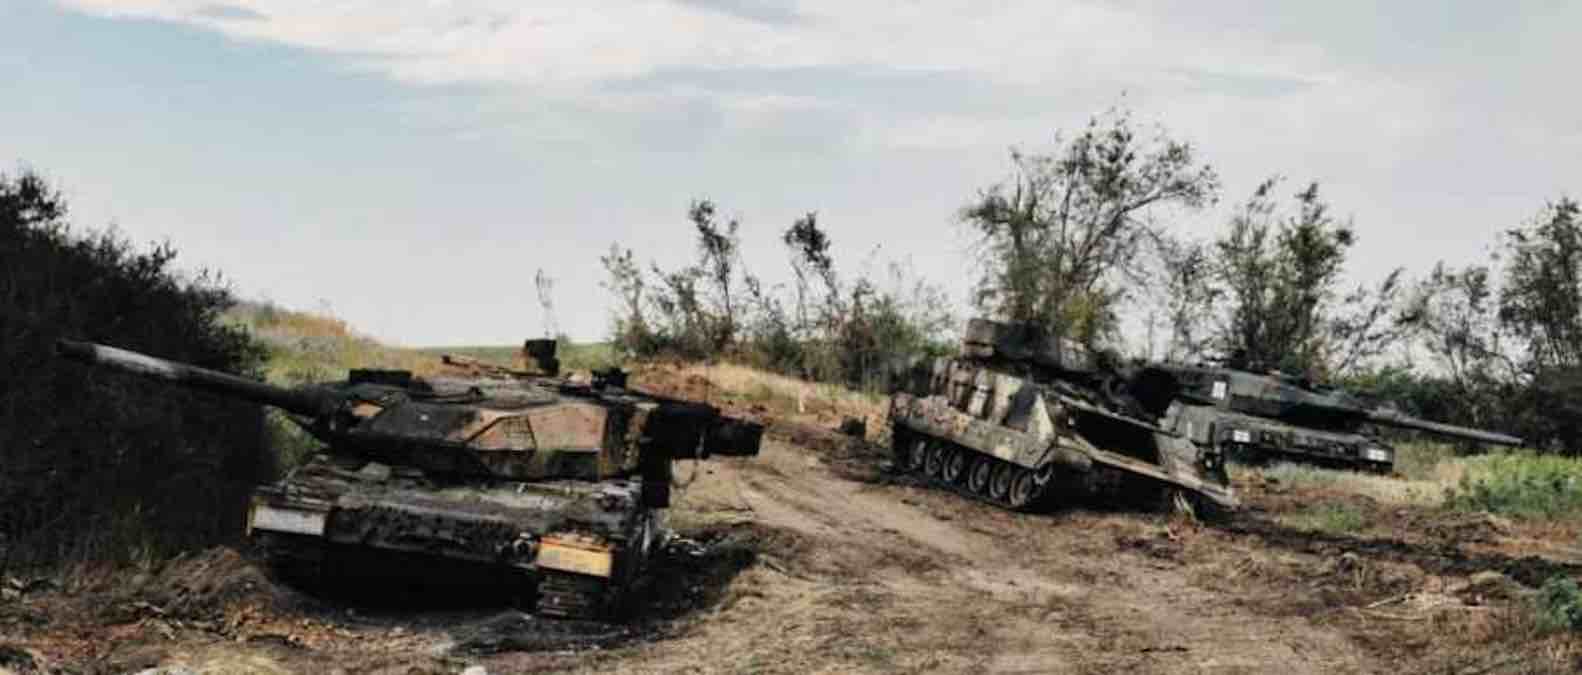 ruske snage unistili smo skoro sve tenkove leopard koje su isporucile poljska i portugal